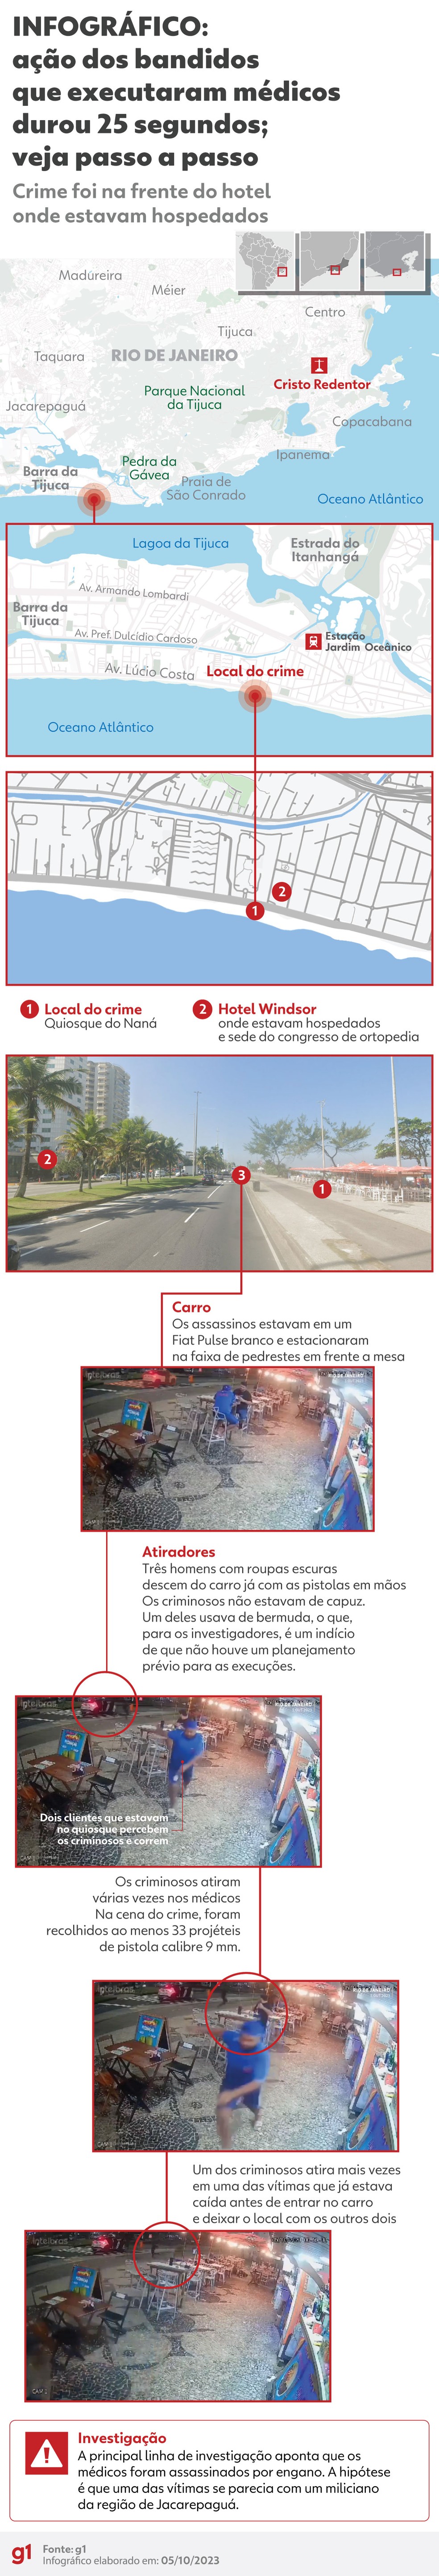 Infográfico mostra como foi o assassinato dos três médicos no Rio — Foto: Arte g1